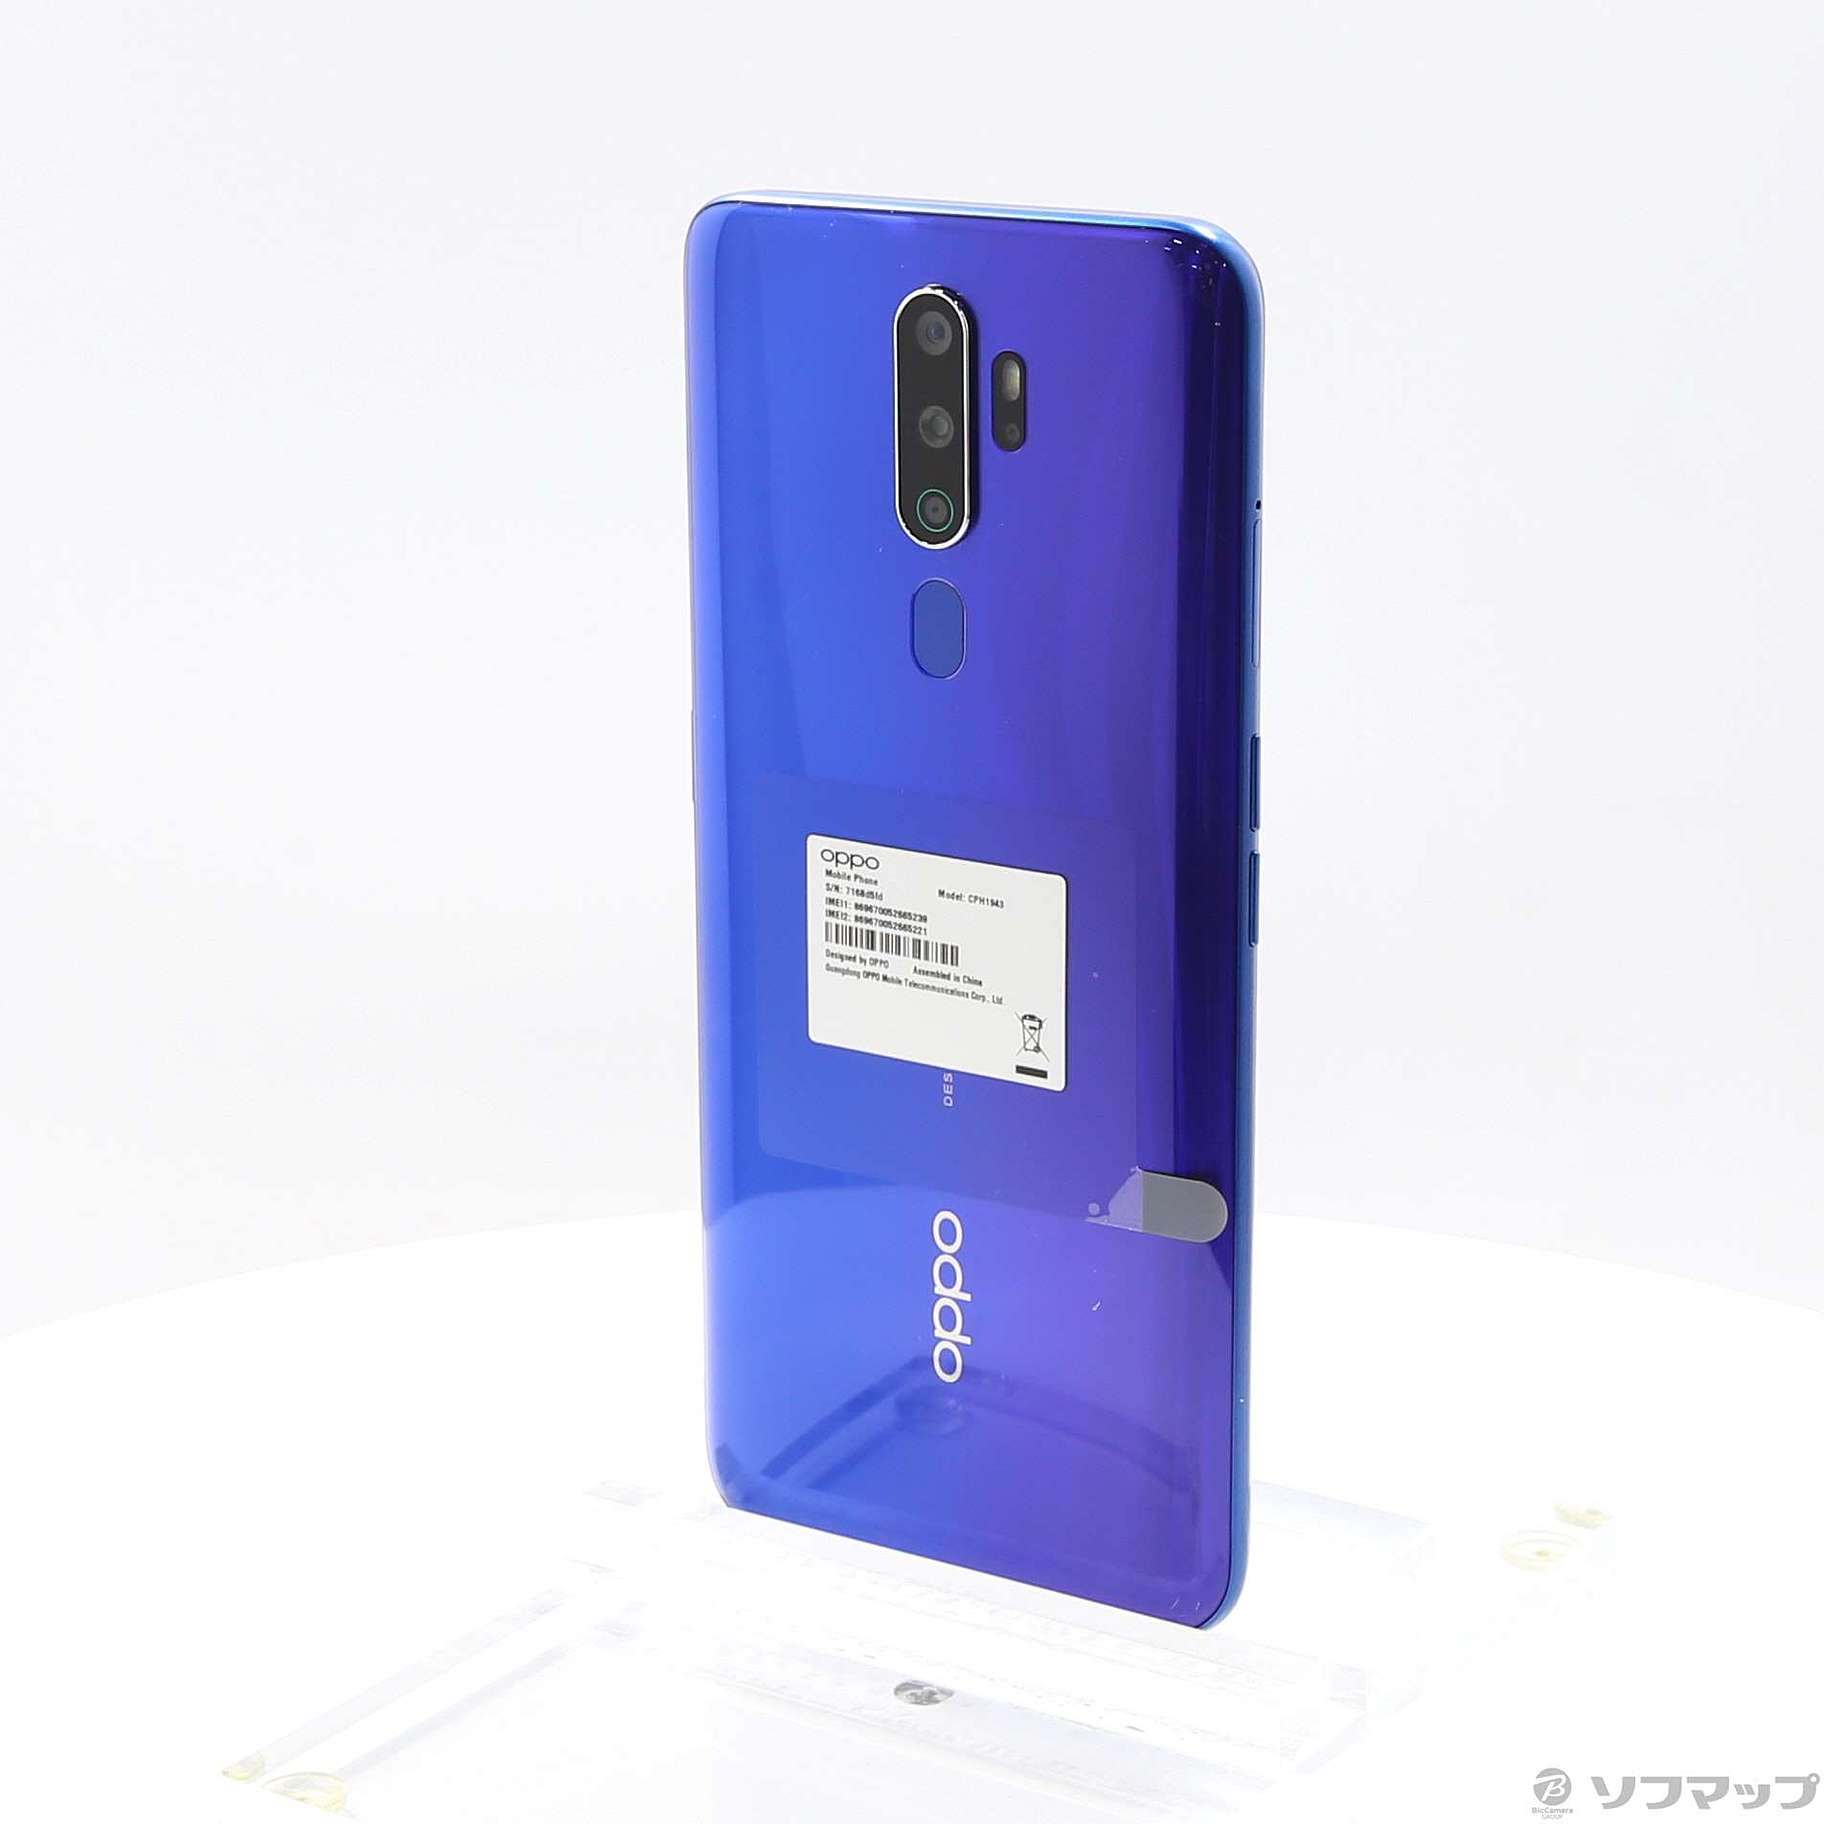 スマートフォン/携帯電話【新品未開封】SIMフリー OPPO A5 2020 ブルー本体